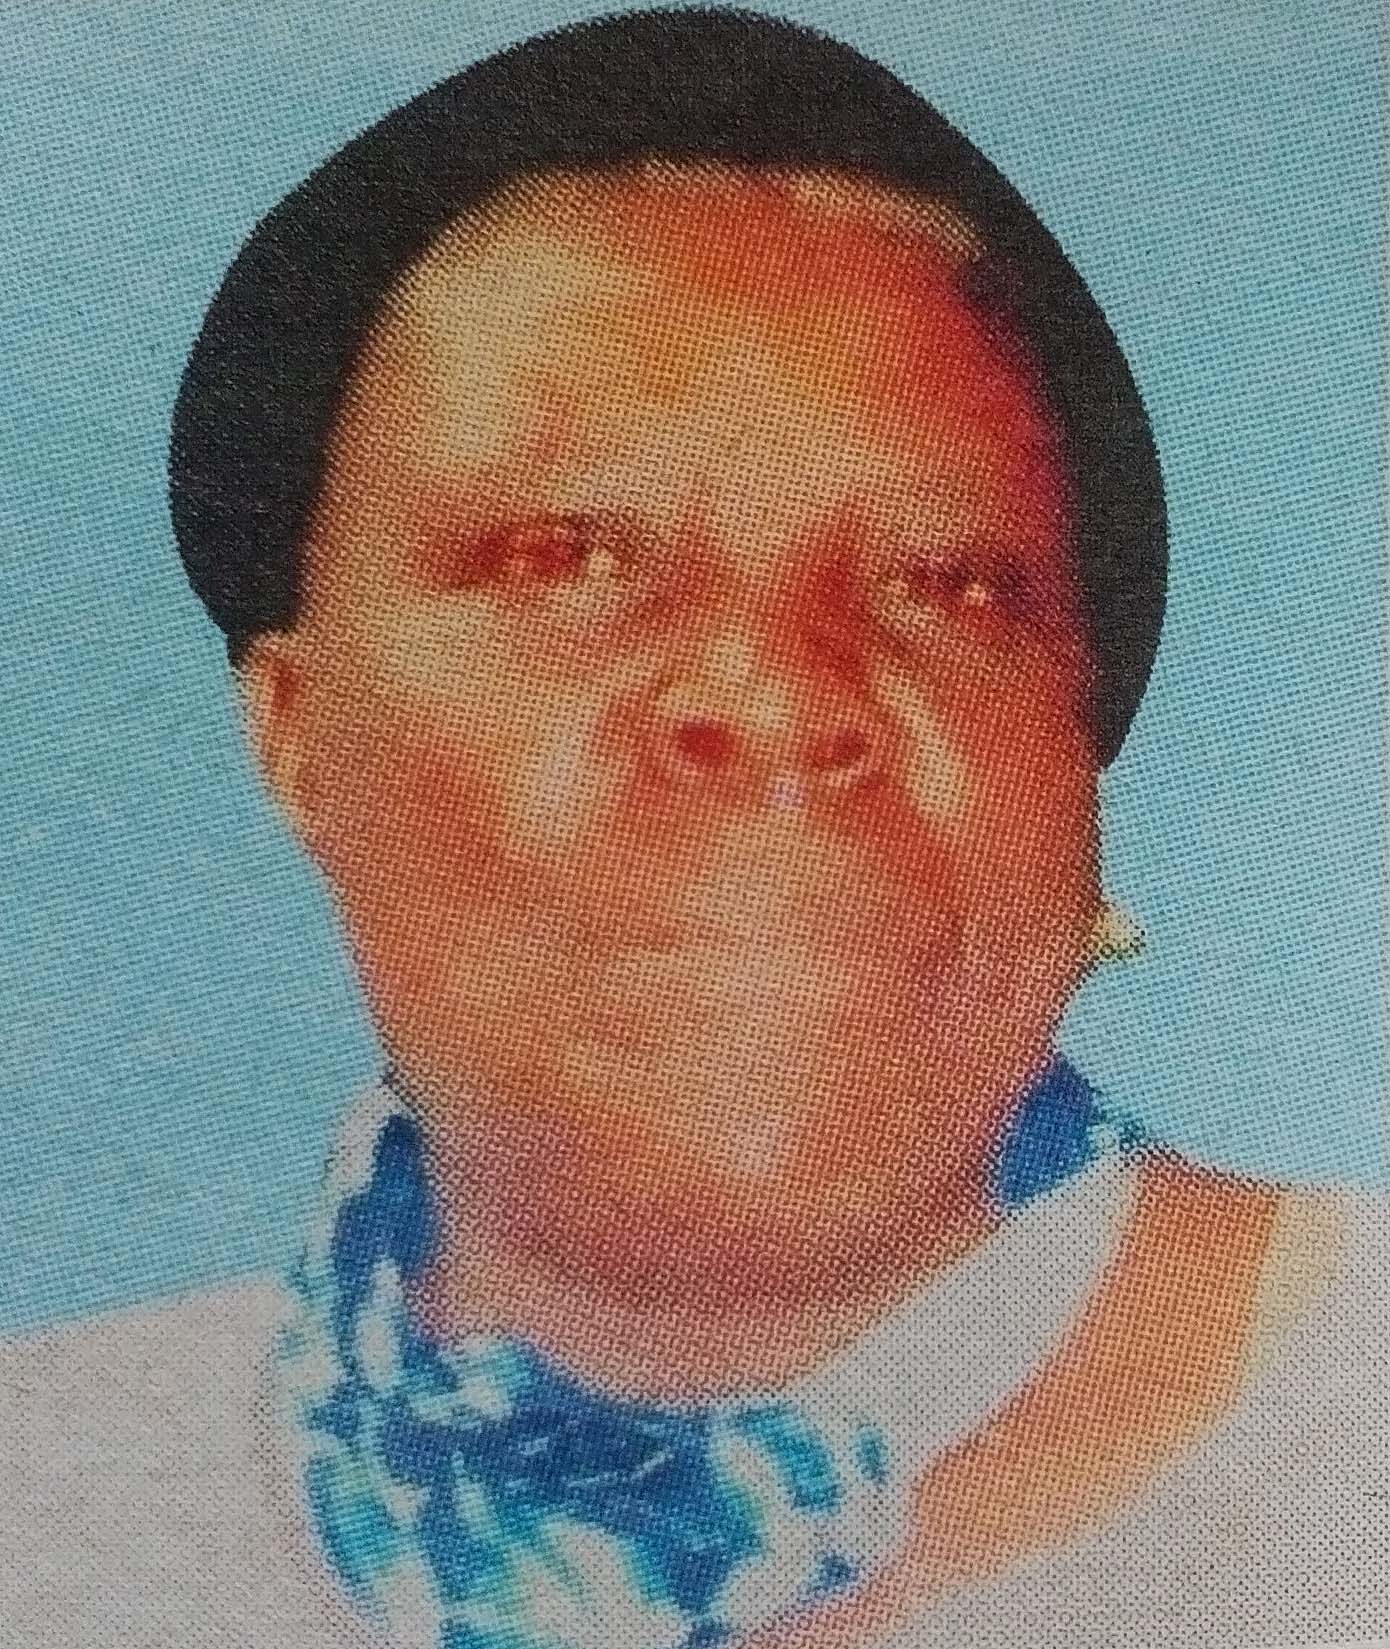 Obituary Image of Dorcas Akinyi Onyango